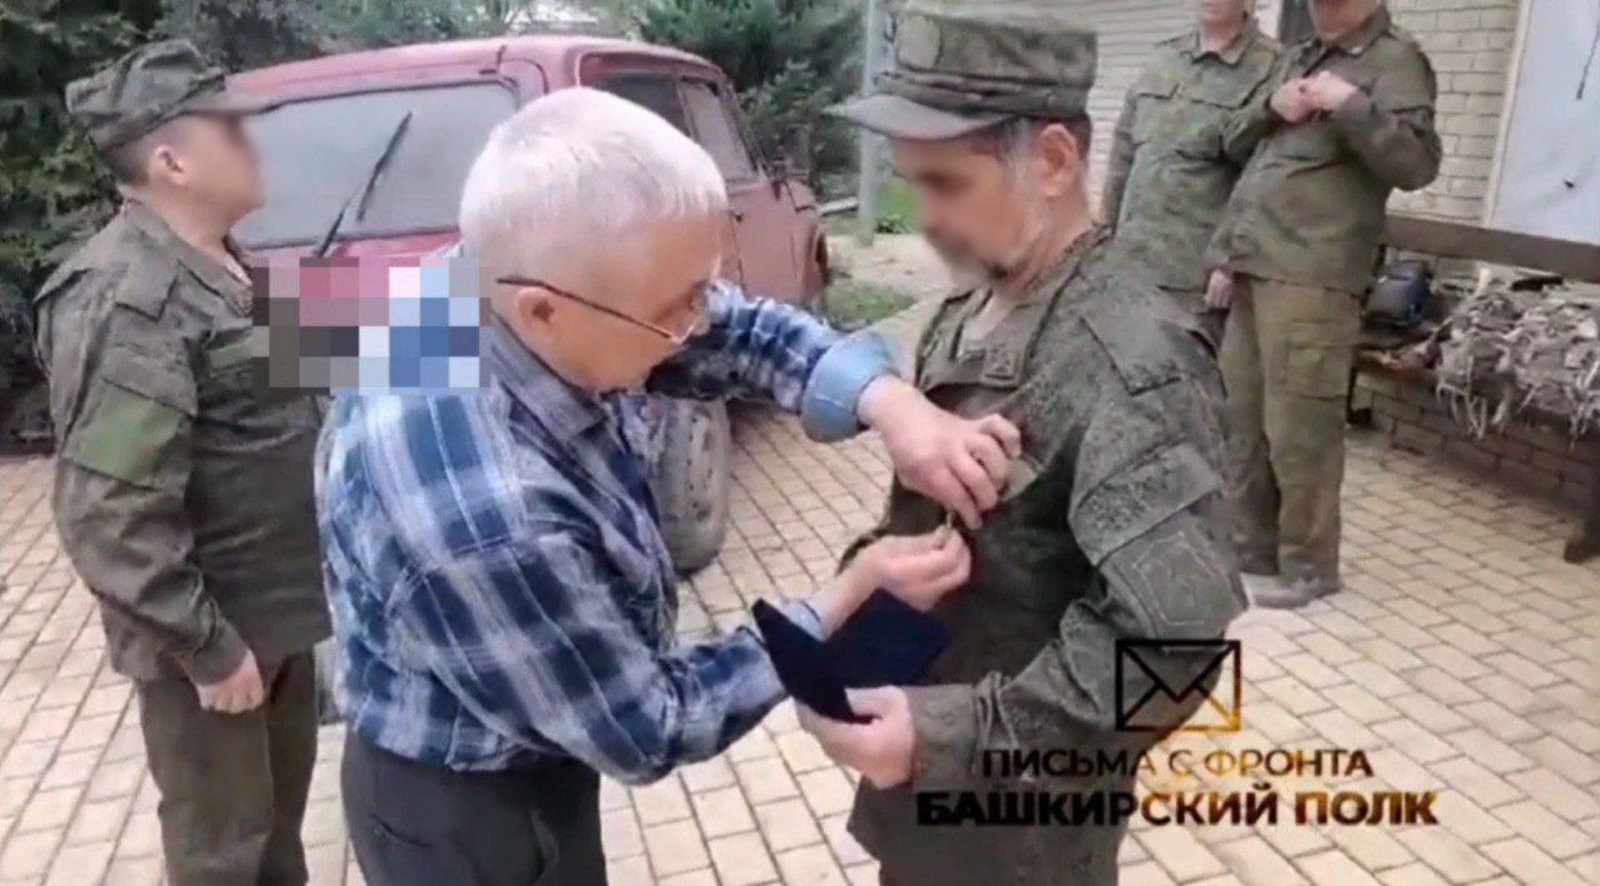 Бойцы гаубичного артдивизиона Башкирии получили награды за освобождение Авдеевки